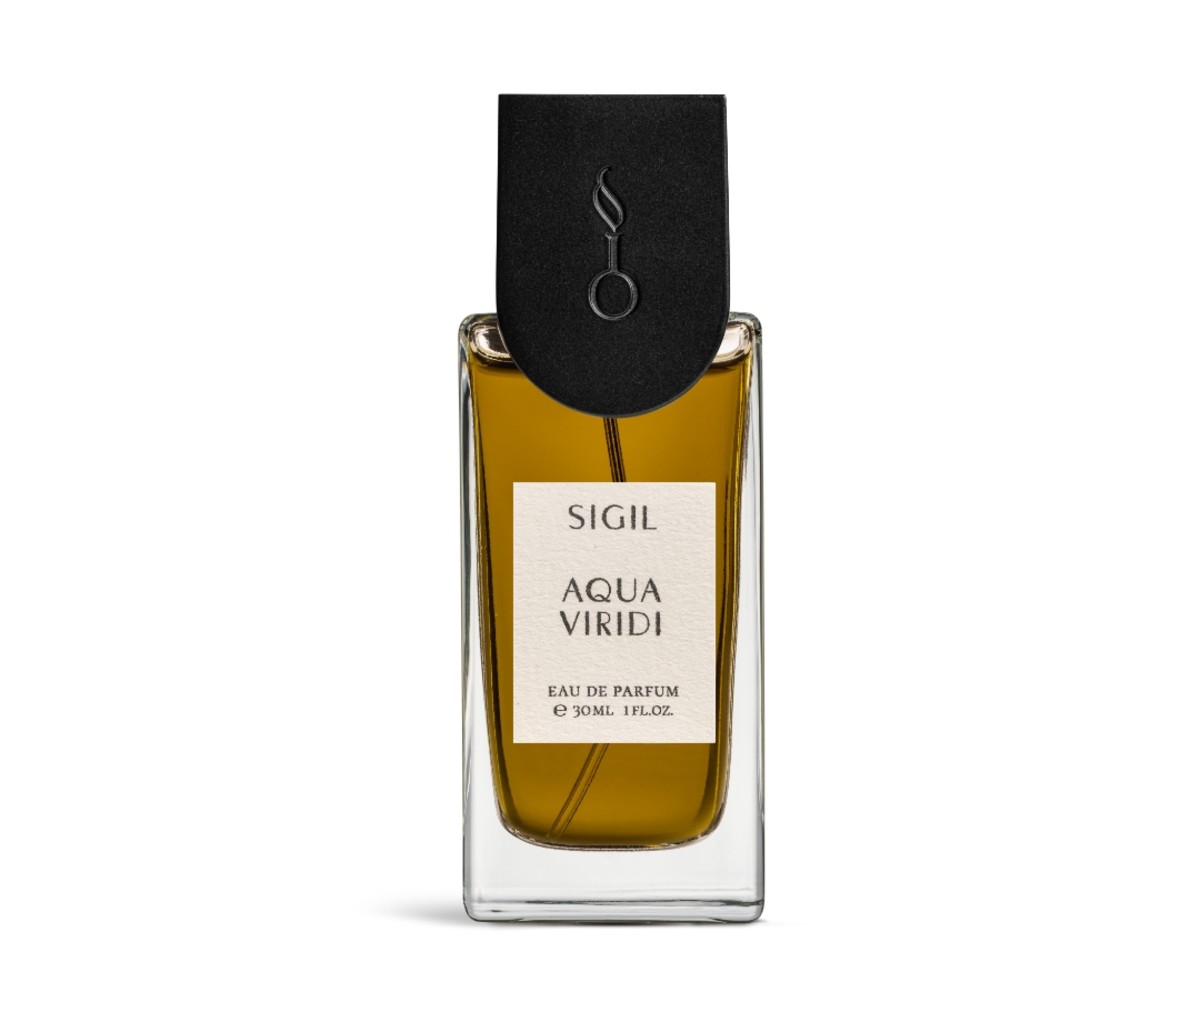 Sigil Aqua Viridi men's summer fragrances